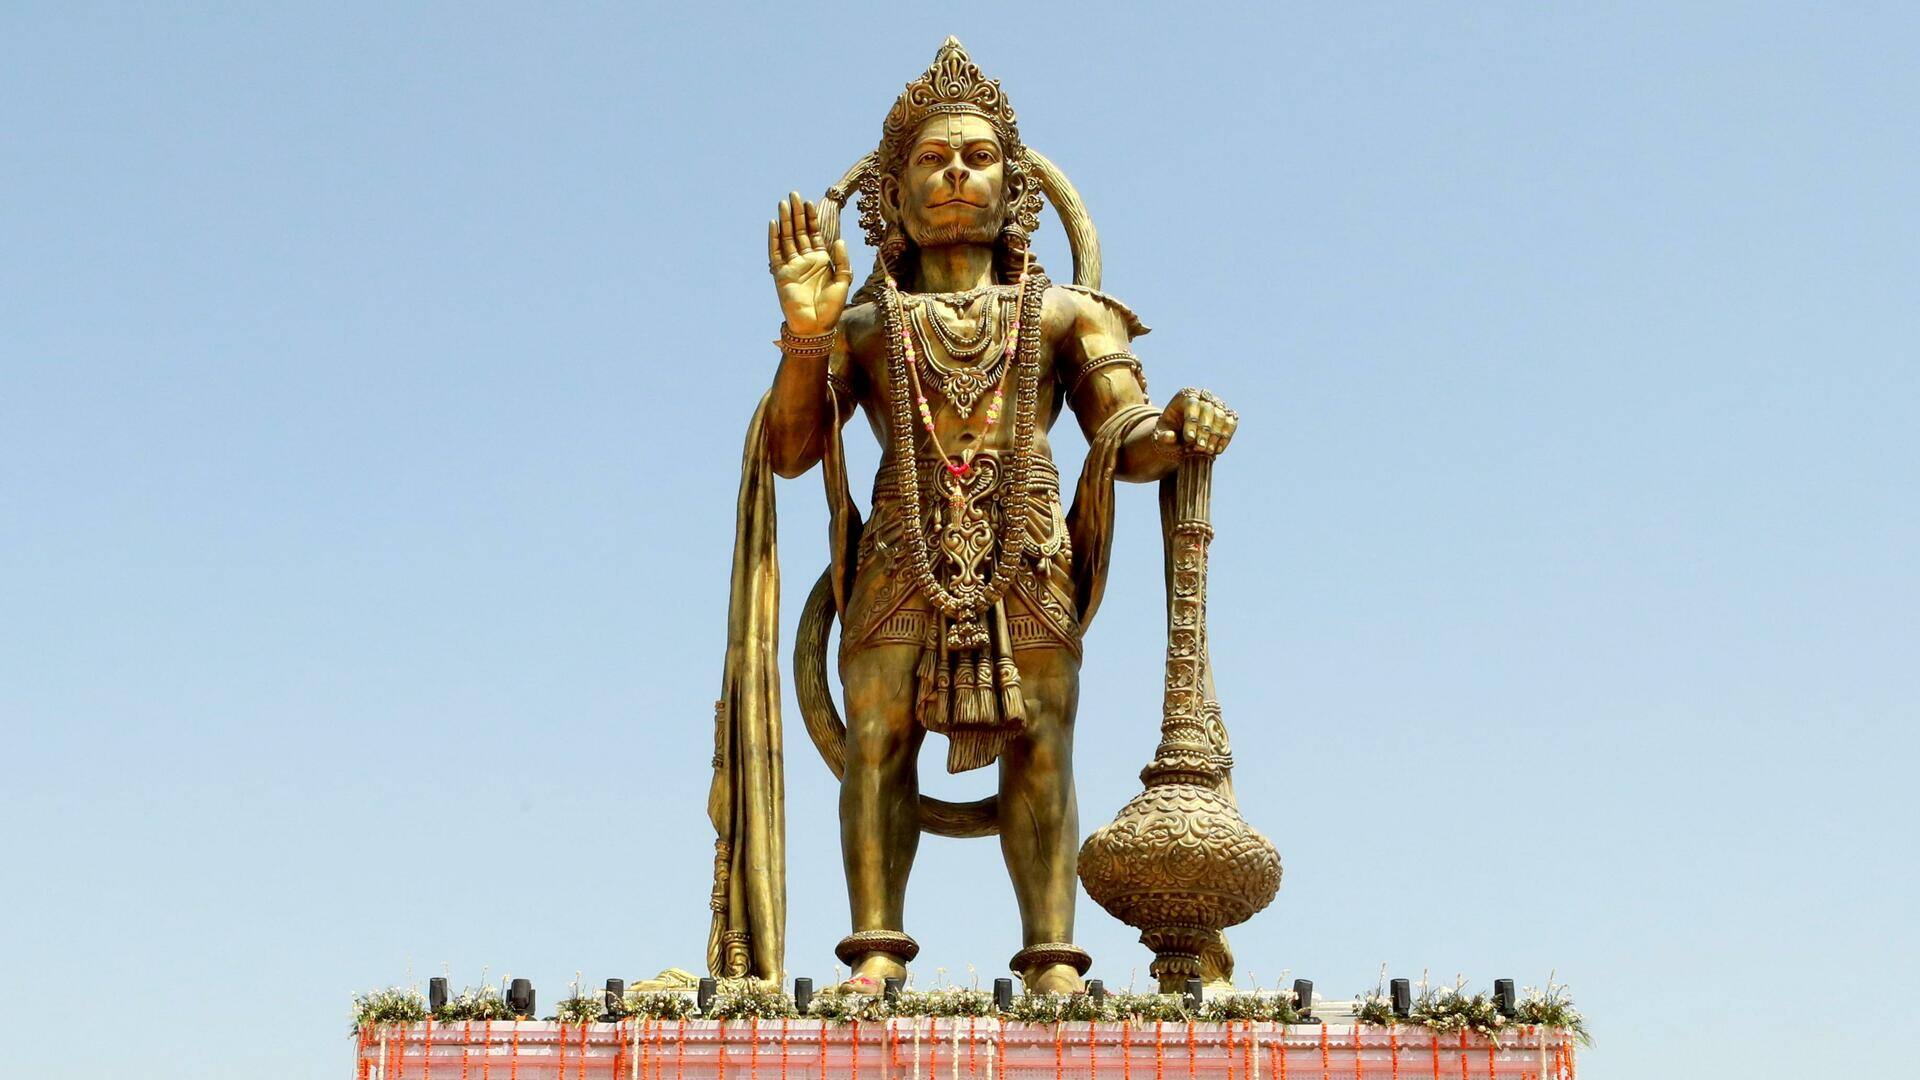 गुजरात: सालंगपुर में 54 फीट ऊंची हनुमान प्रतिमा का अनावरण, जानें खास बातें